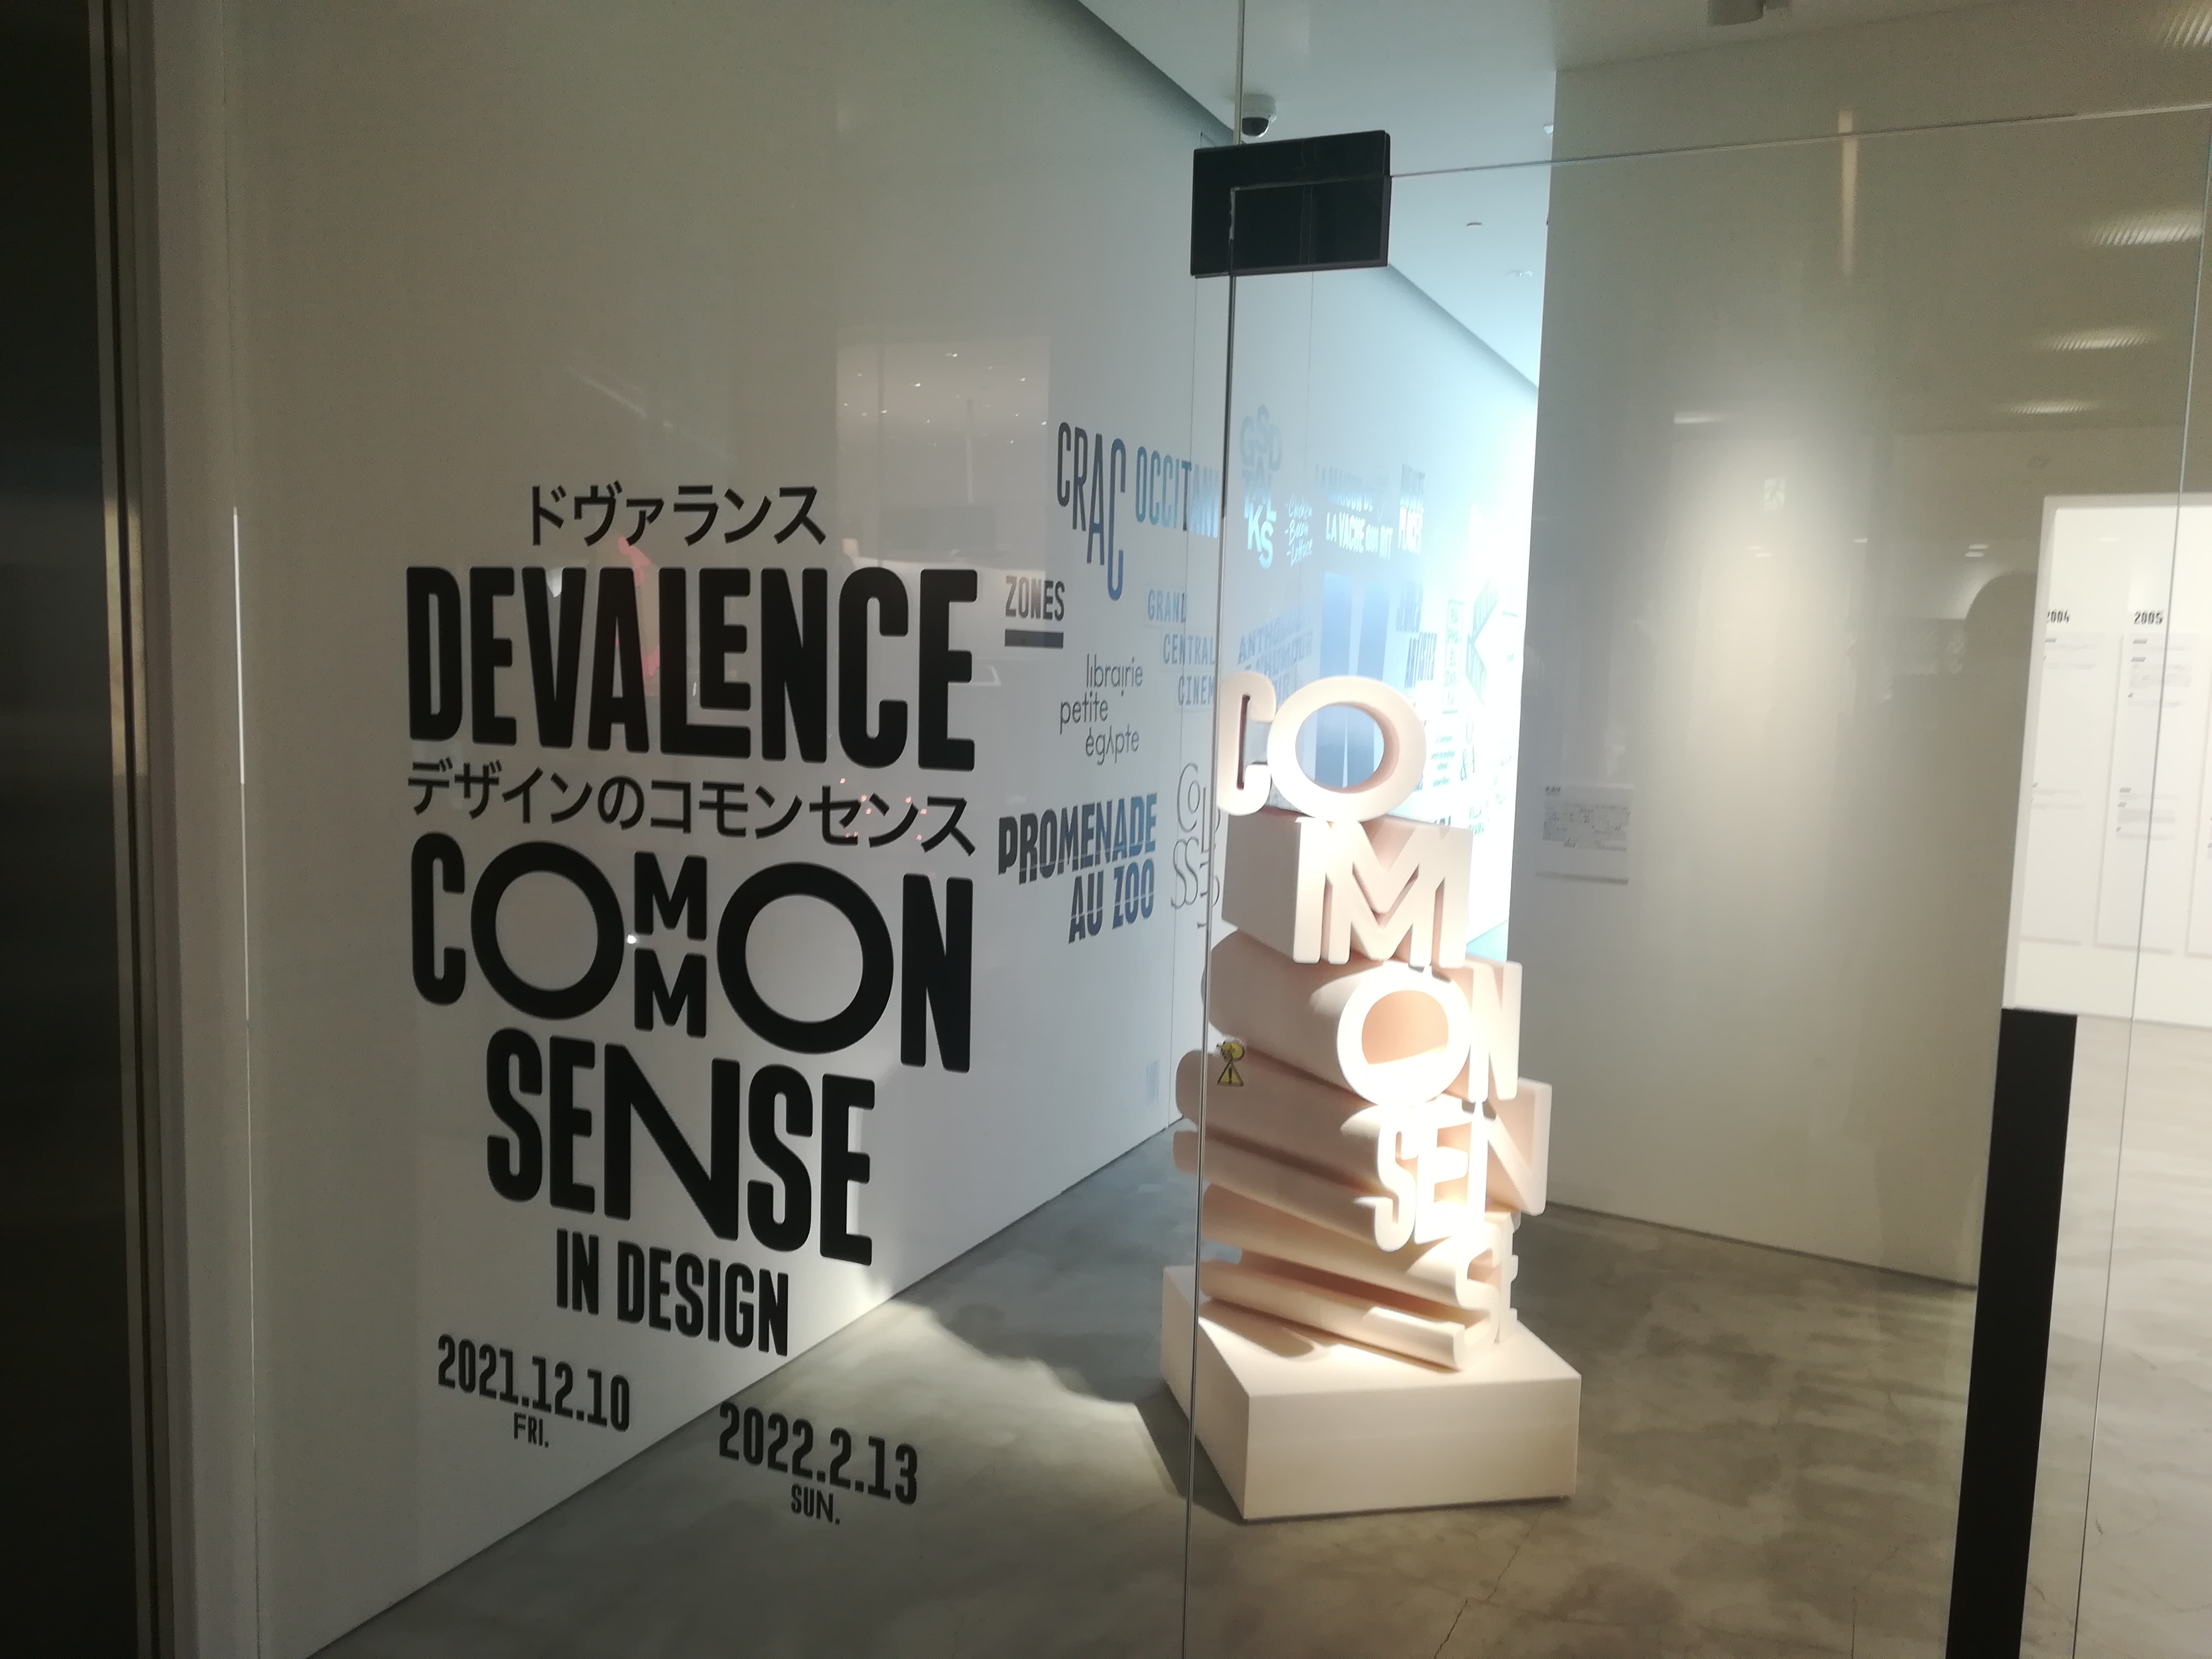 『ドヴァランス_デザインのコモンセンス（DEVAKENCE COMMON SENSE IN DESIGN）』イベントの感想、レビュー、あらすじ、ネタバレ